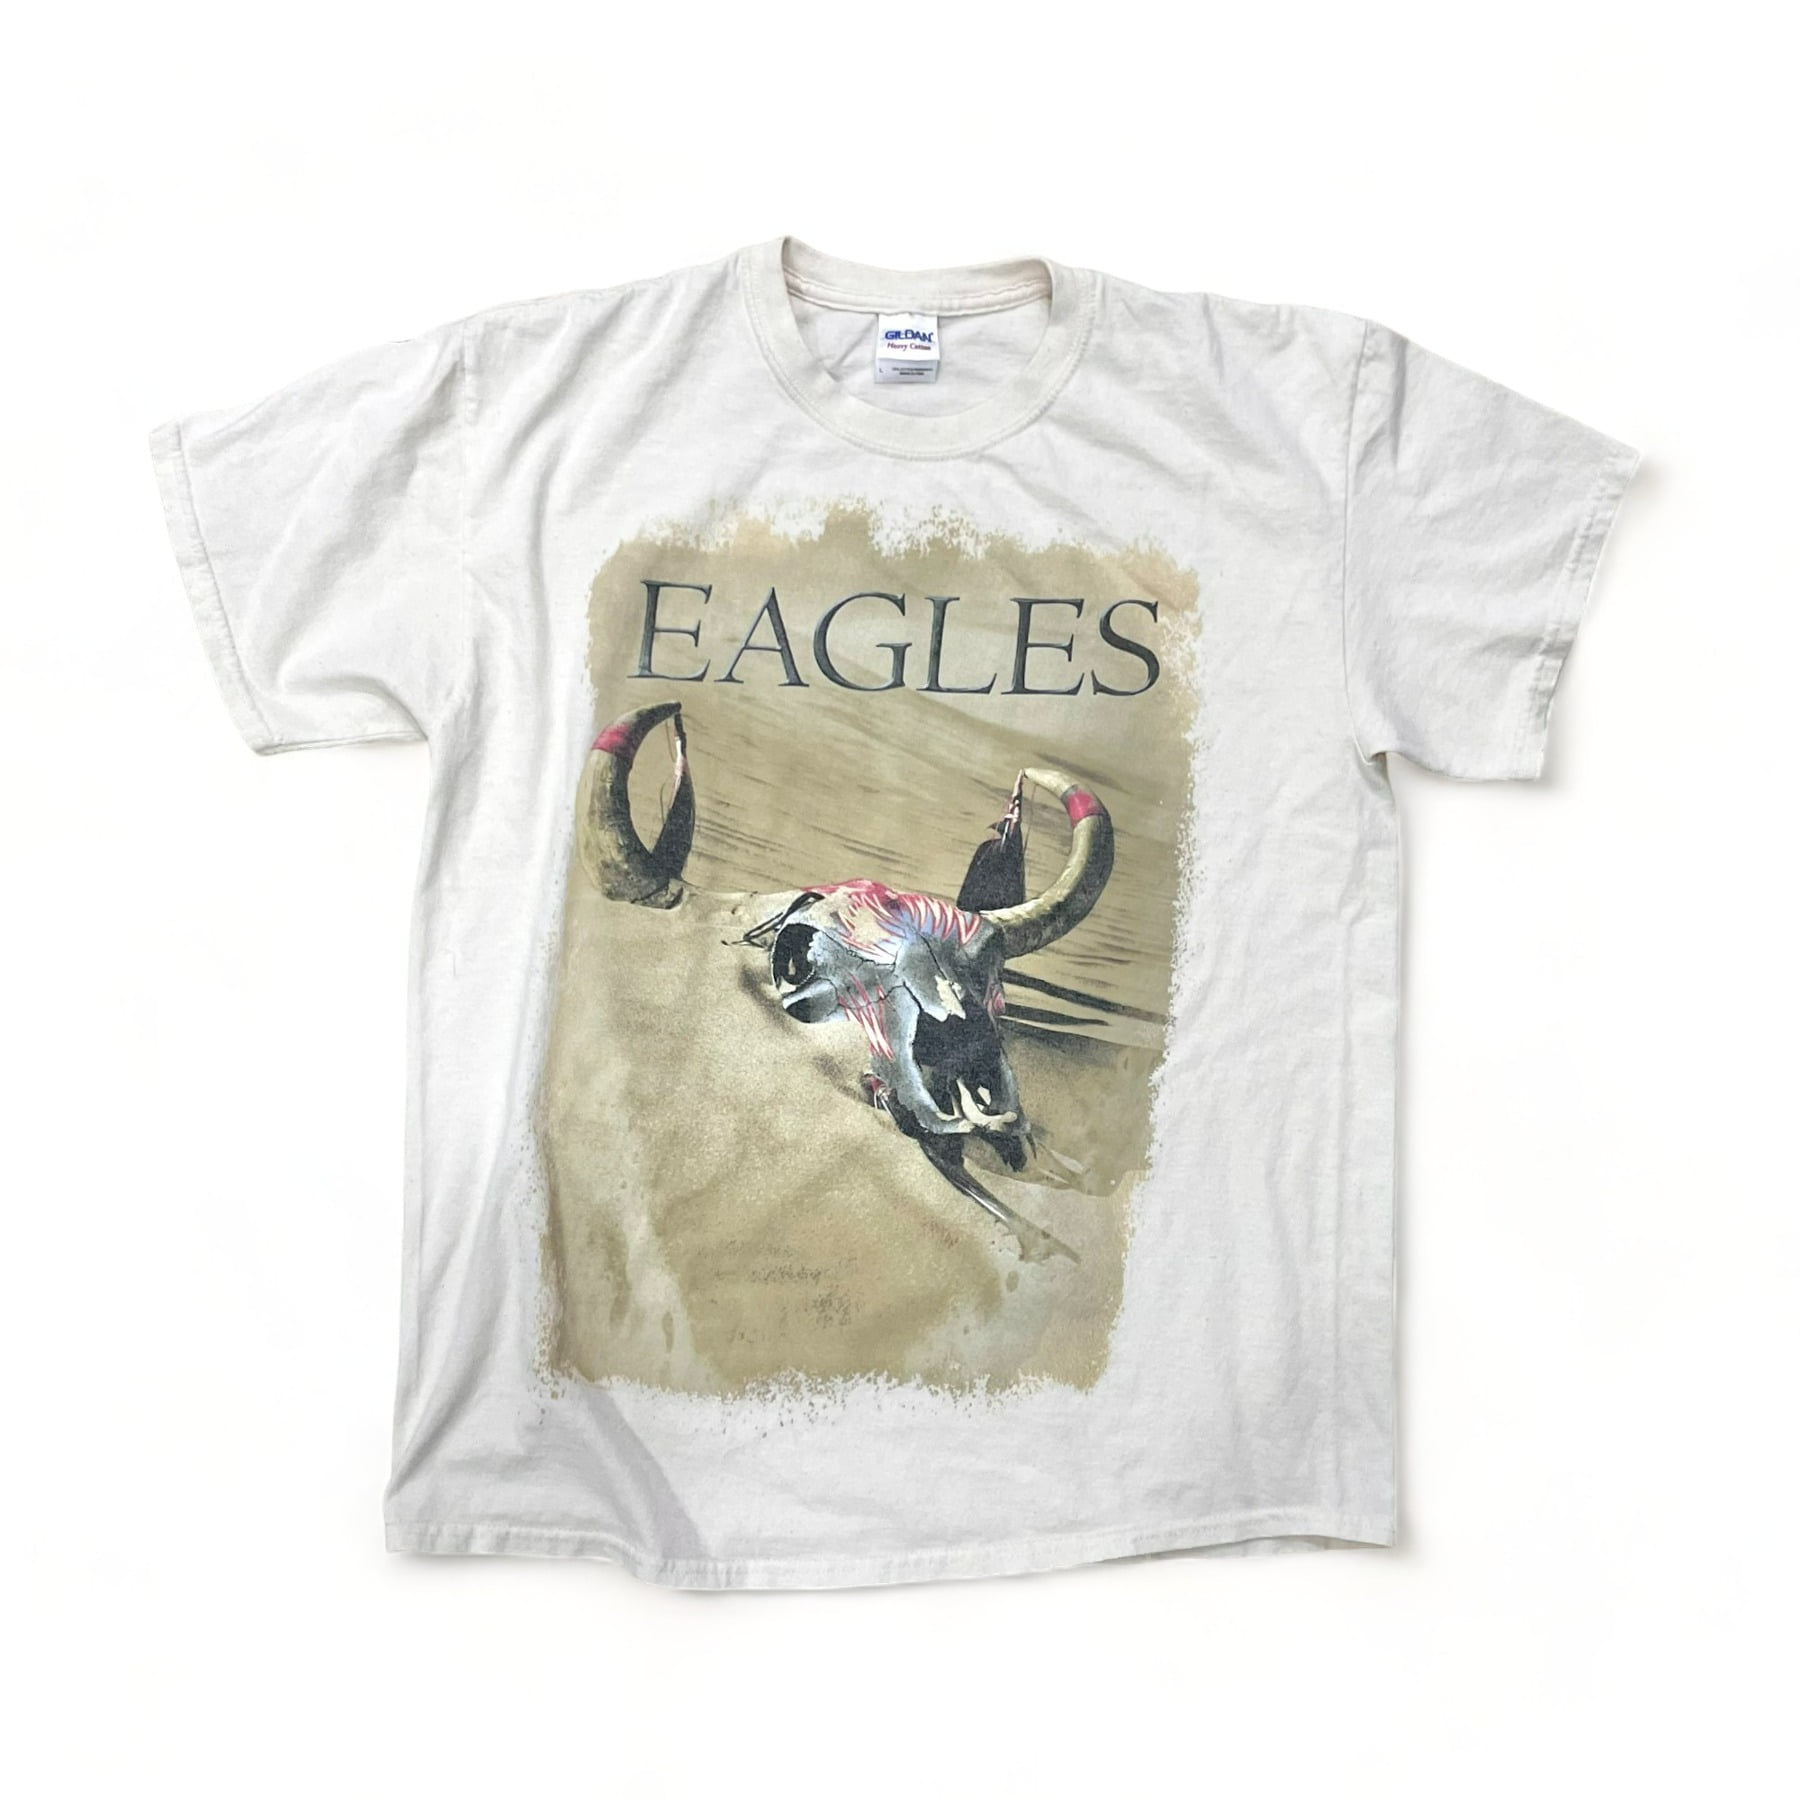 2013 Eagles Tour Tee - L